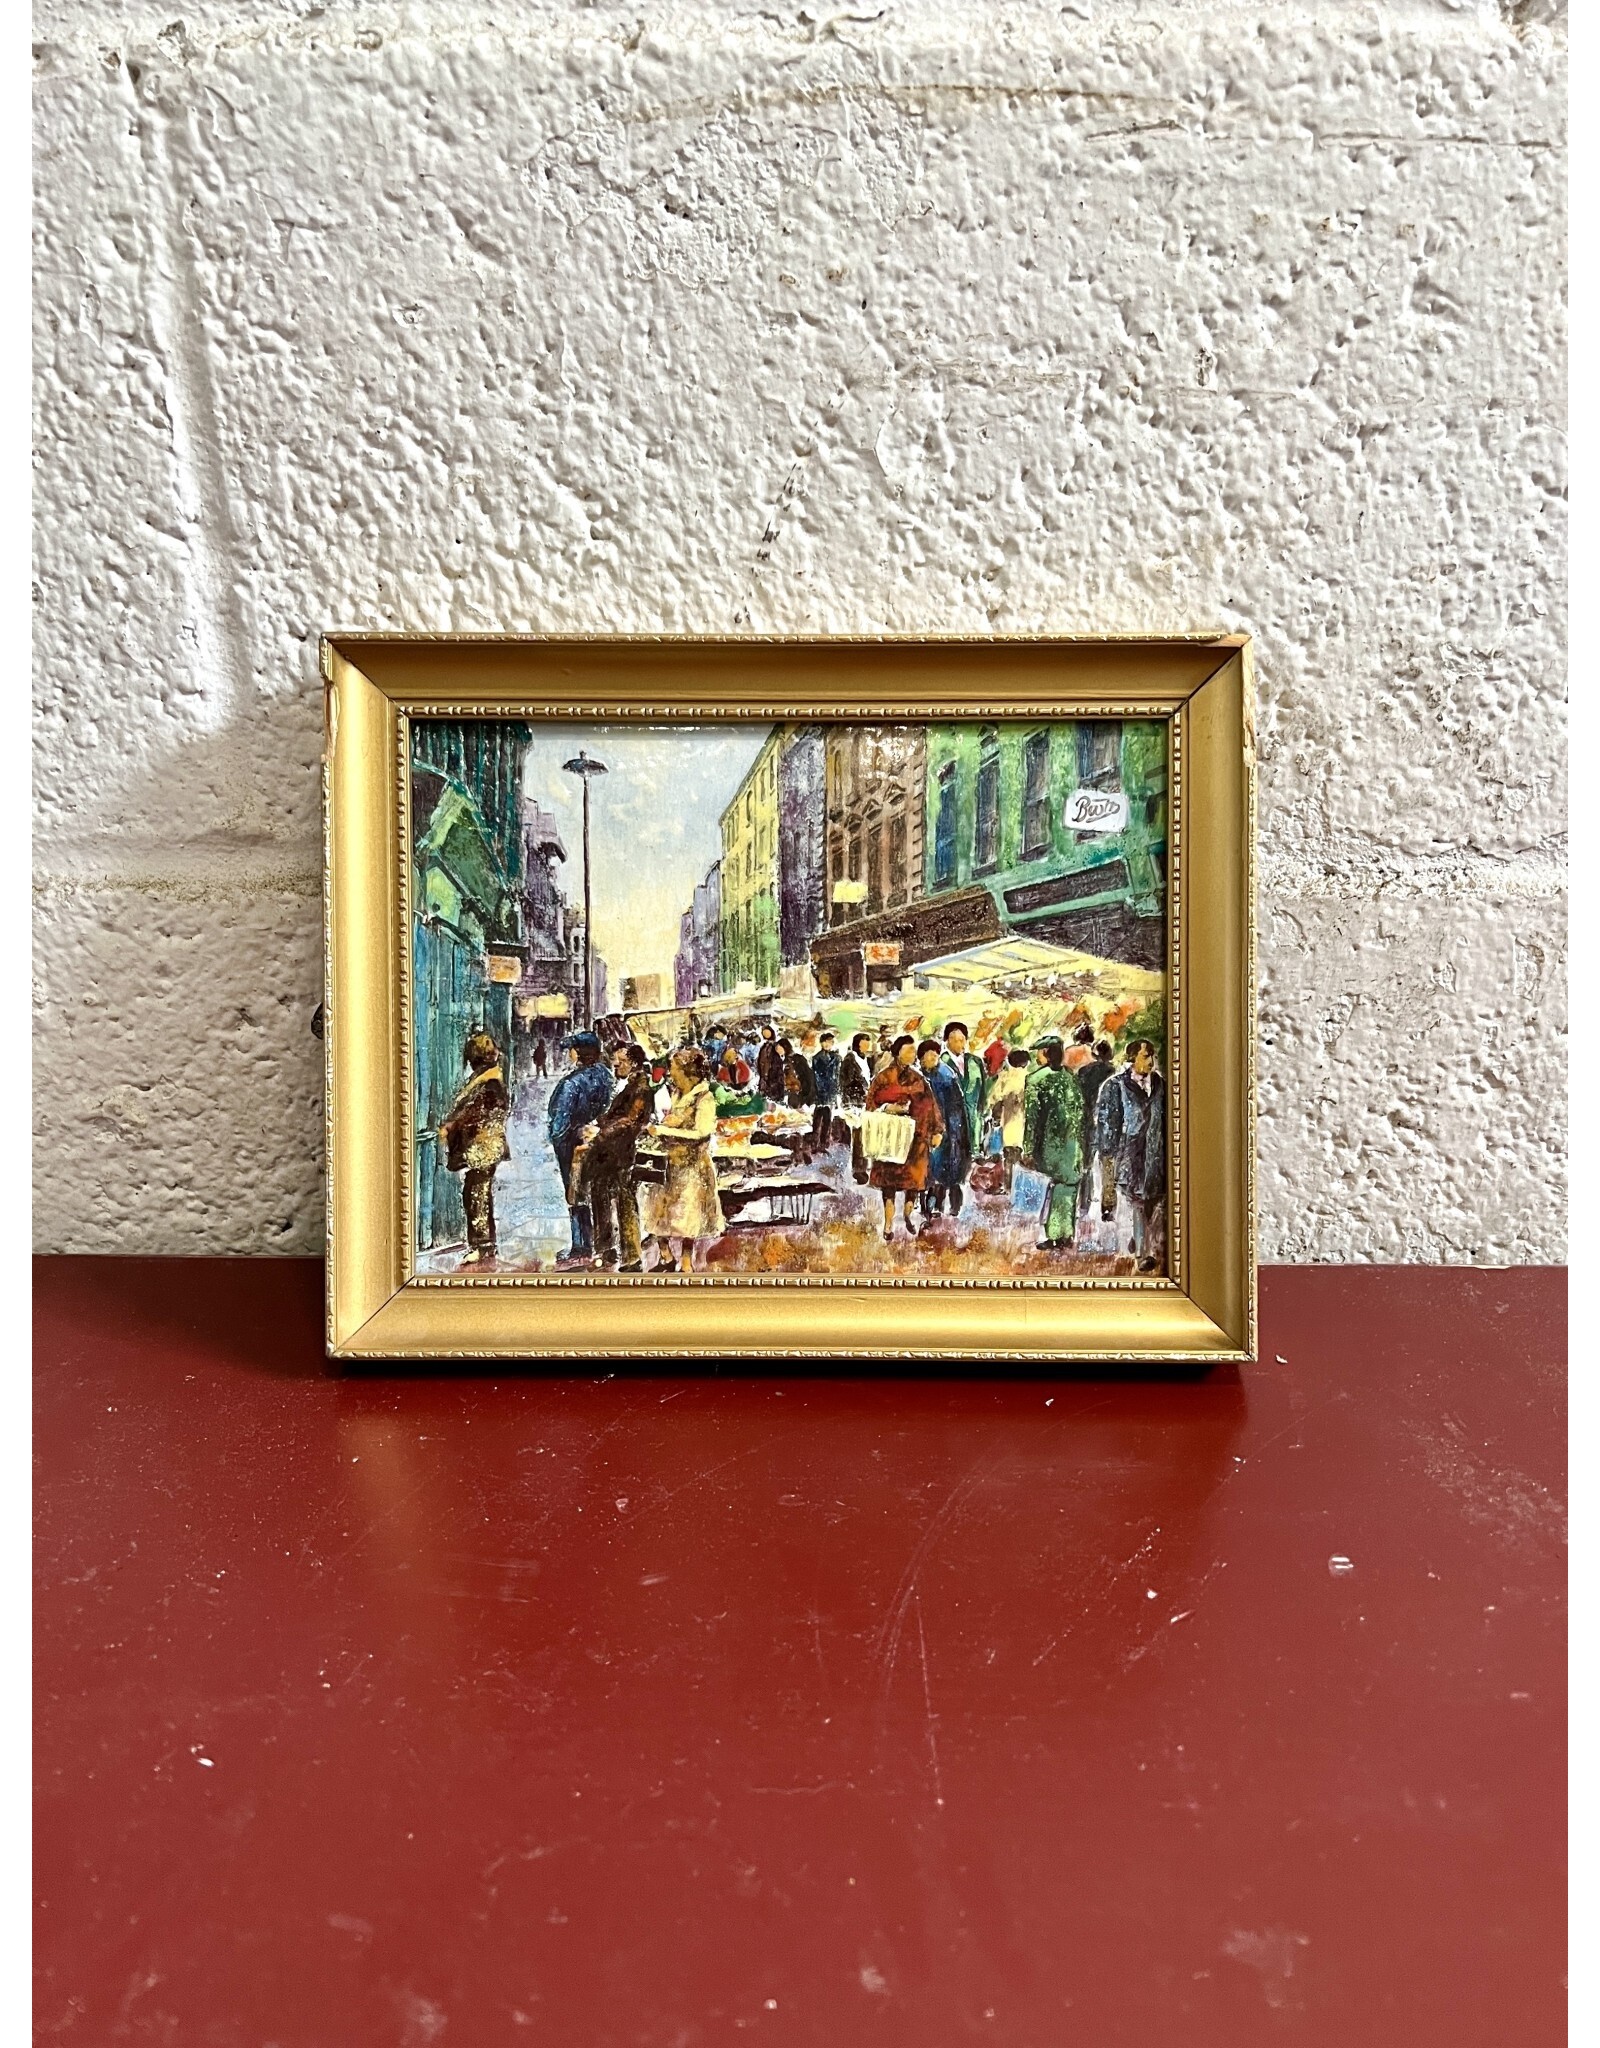 Square, framed enameled impasto style painting